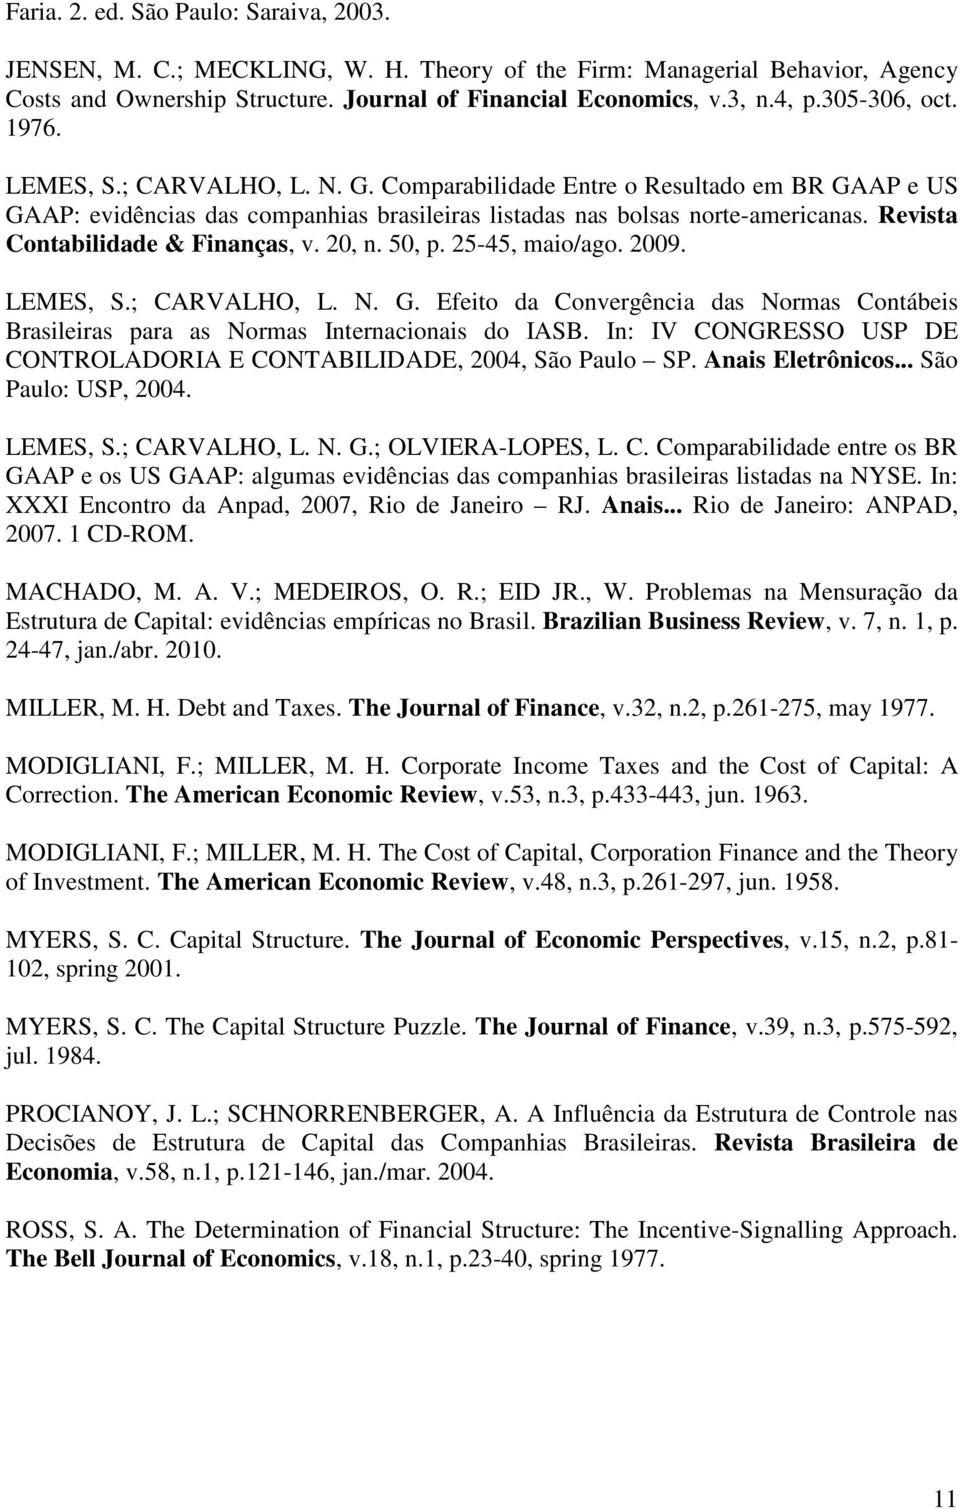 Revista Contabilidade & Finanças, v. 20, n. 50, p. 25-45, maio/ago. 2009. LEMES, S.; CARVALHO, L. N. G. Efeito da Convergência das Normas Contábeis Brasileiras para as Normas Internacionais do IASB.